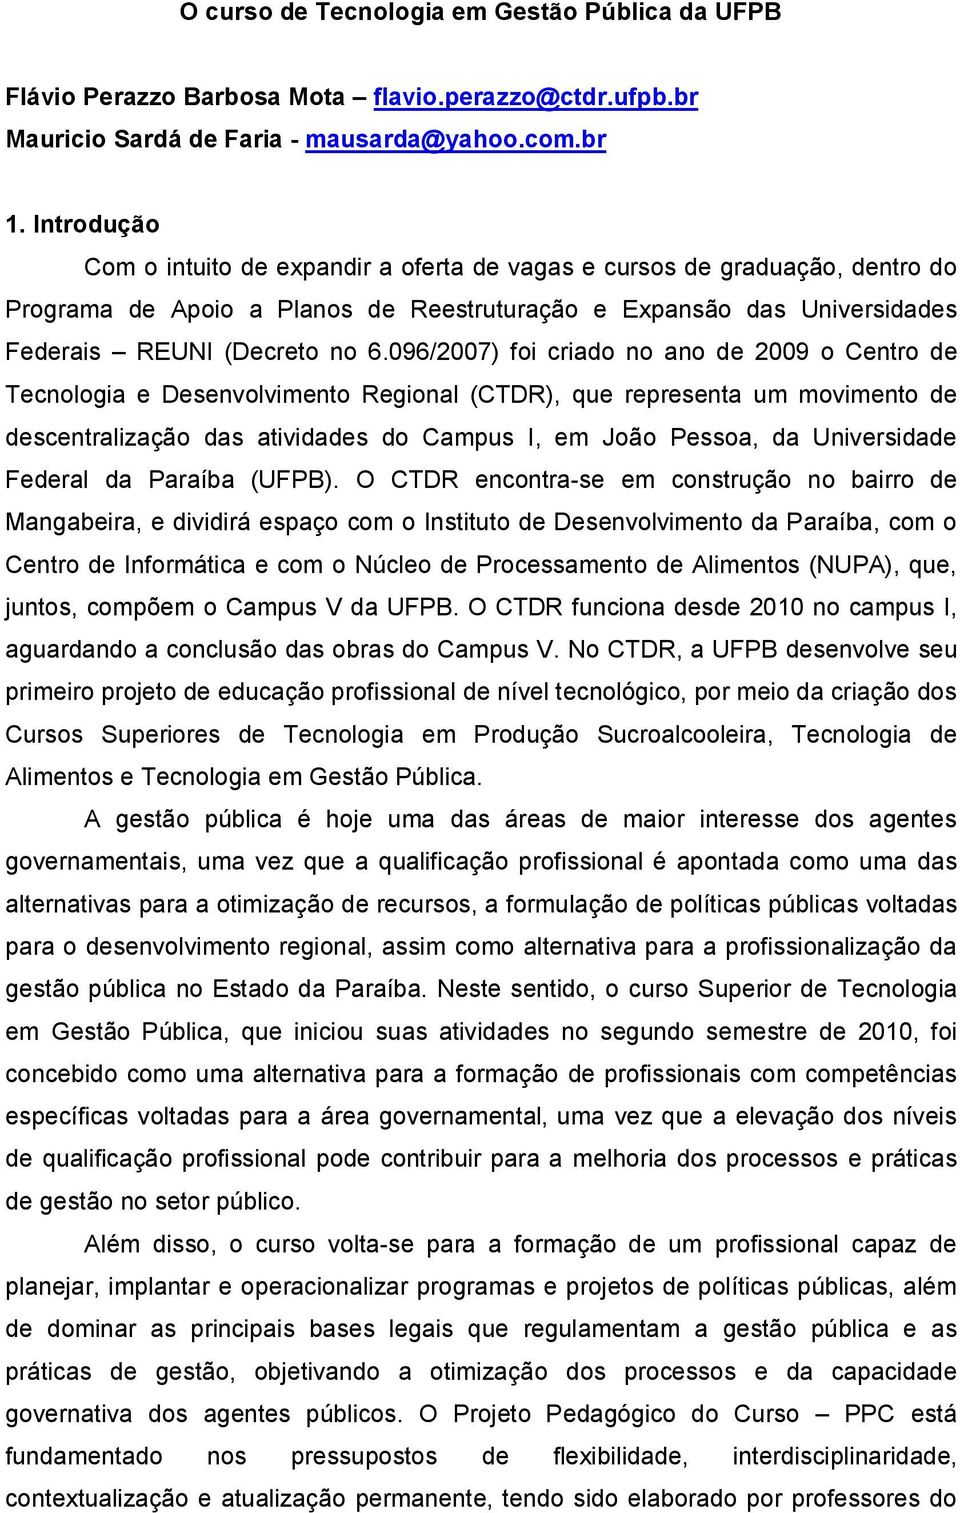 096/2007) foi criado no ano de 2009 o Centro de Tecnologia e Desenvolvimento Regional (CTDR), que representa um movimento de descentralização das atividades do Campus I, em João Pessoa, da